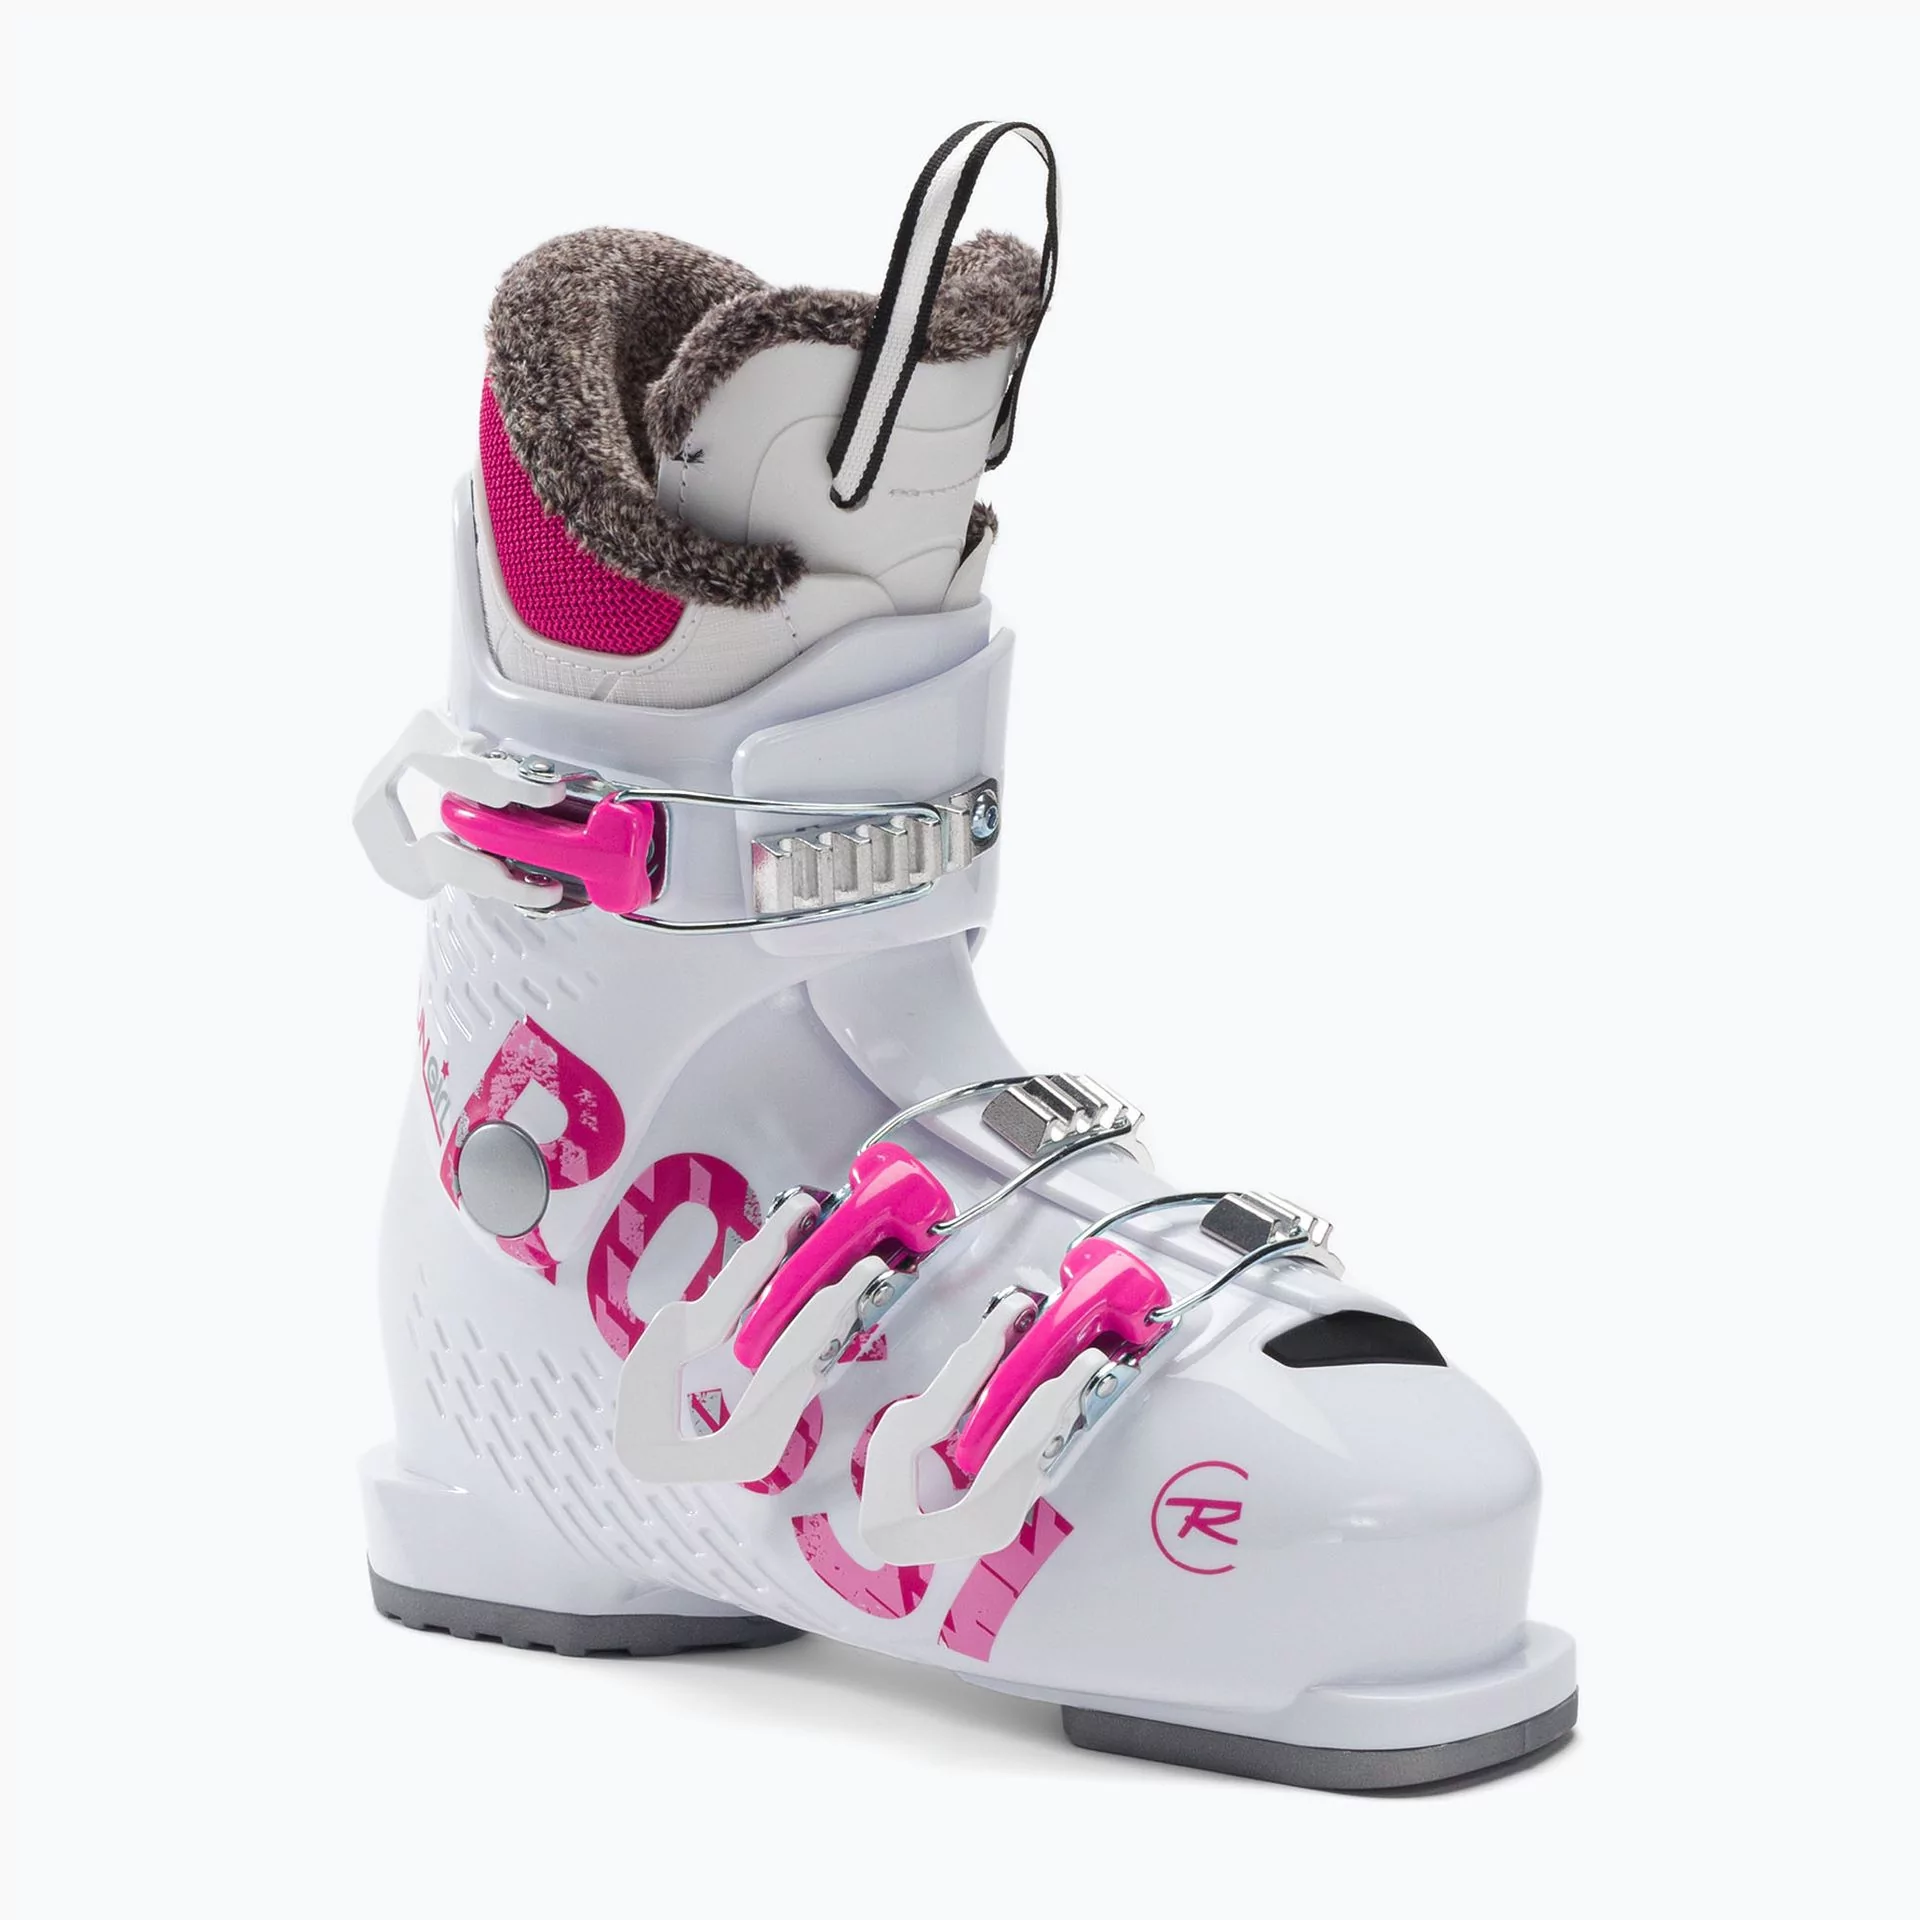 Buty narciarskie dziecięce Rossignol FUN GIRL 3 białe RBJ5130 17.5 cm -  Ceny i opinie na Skapiec.pl